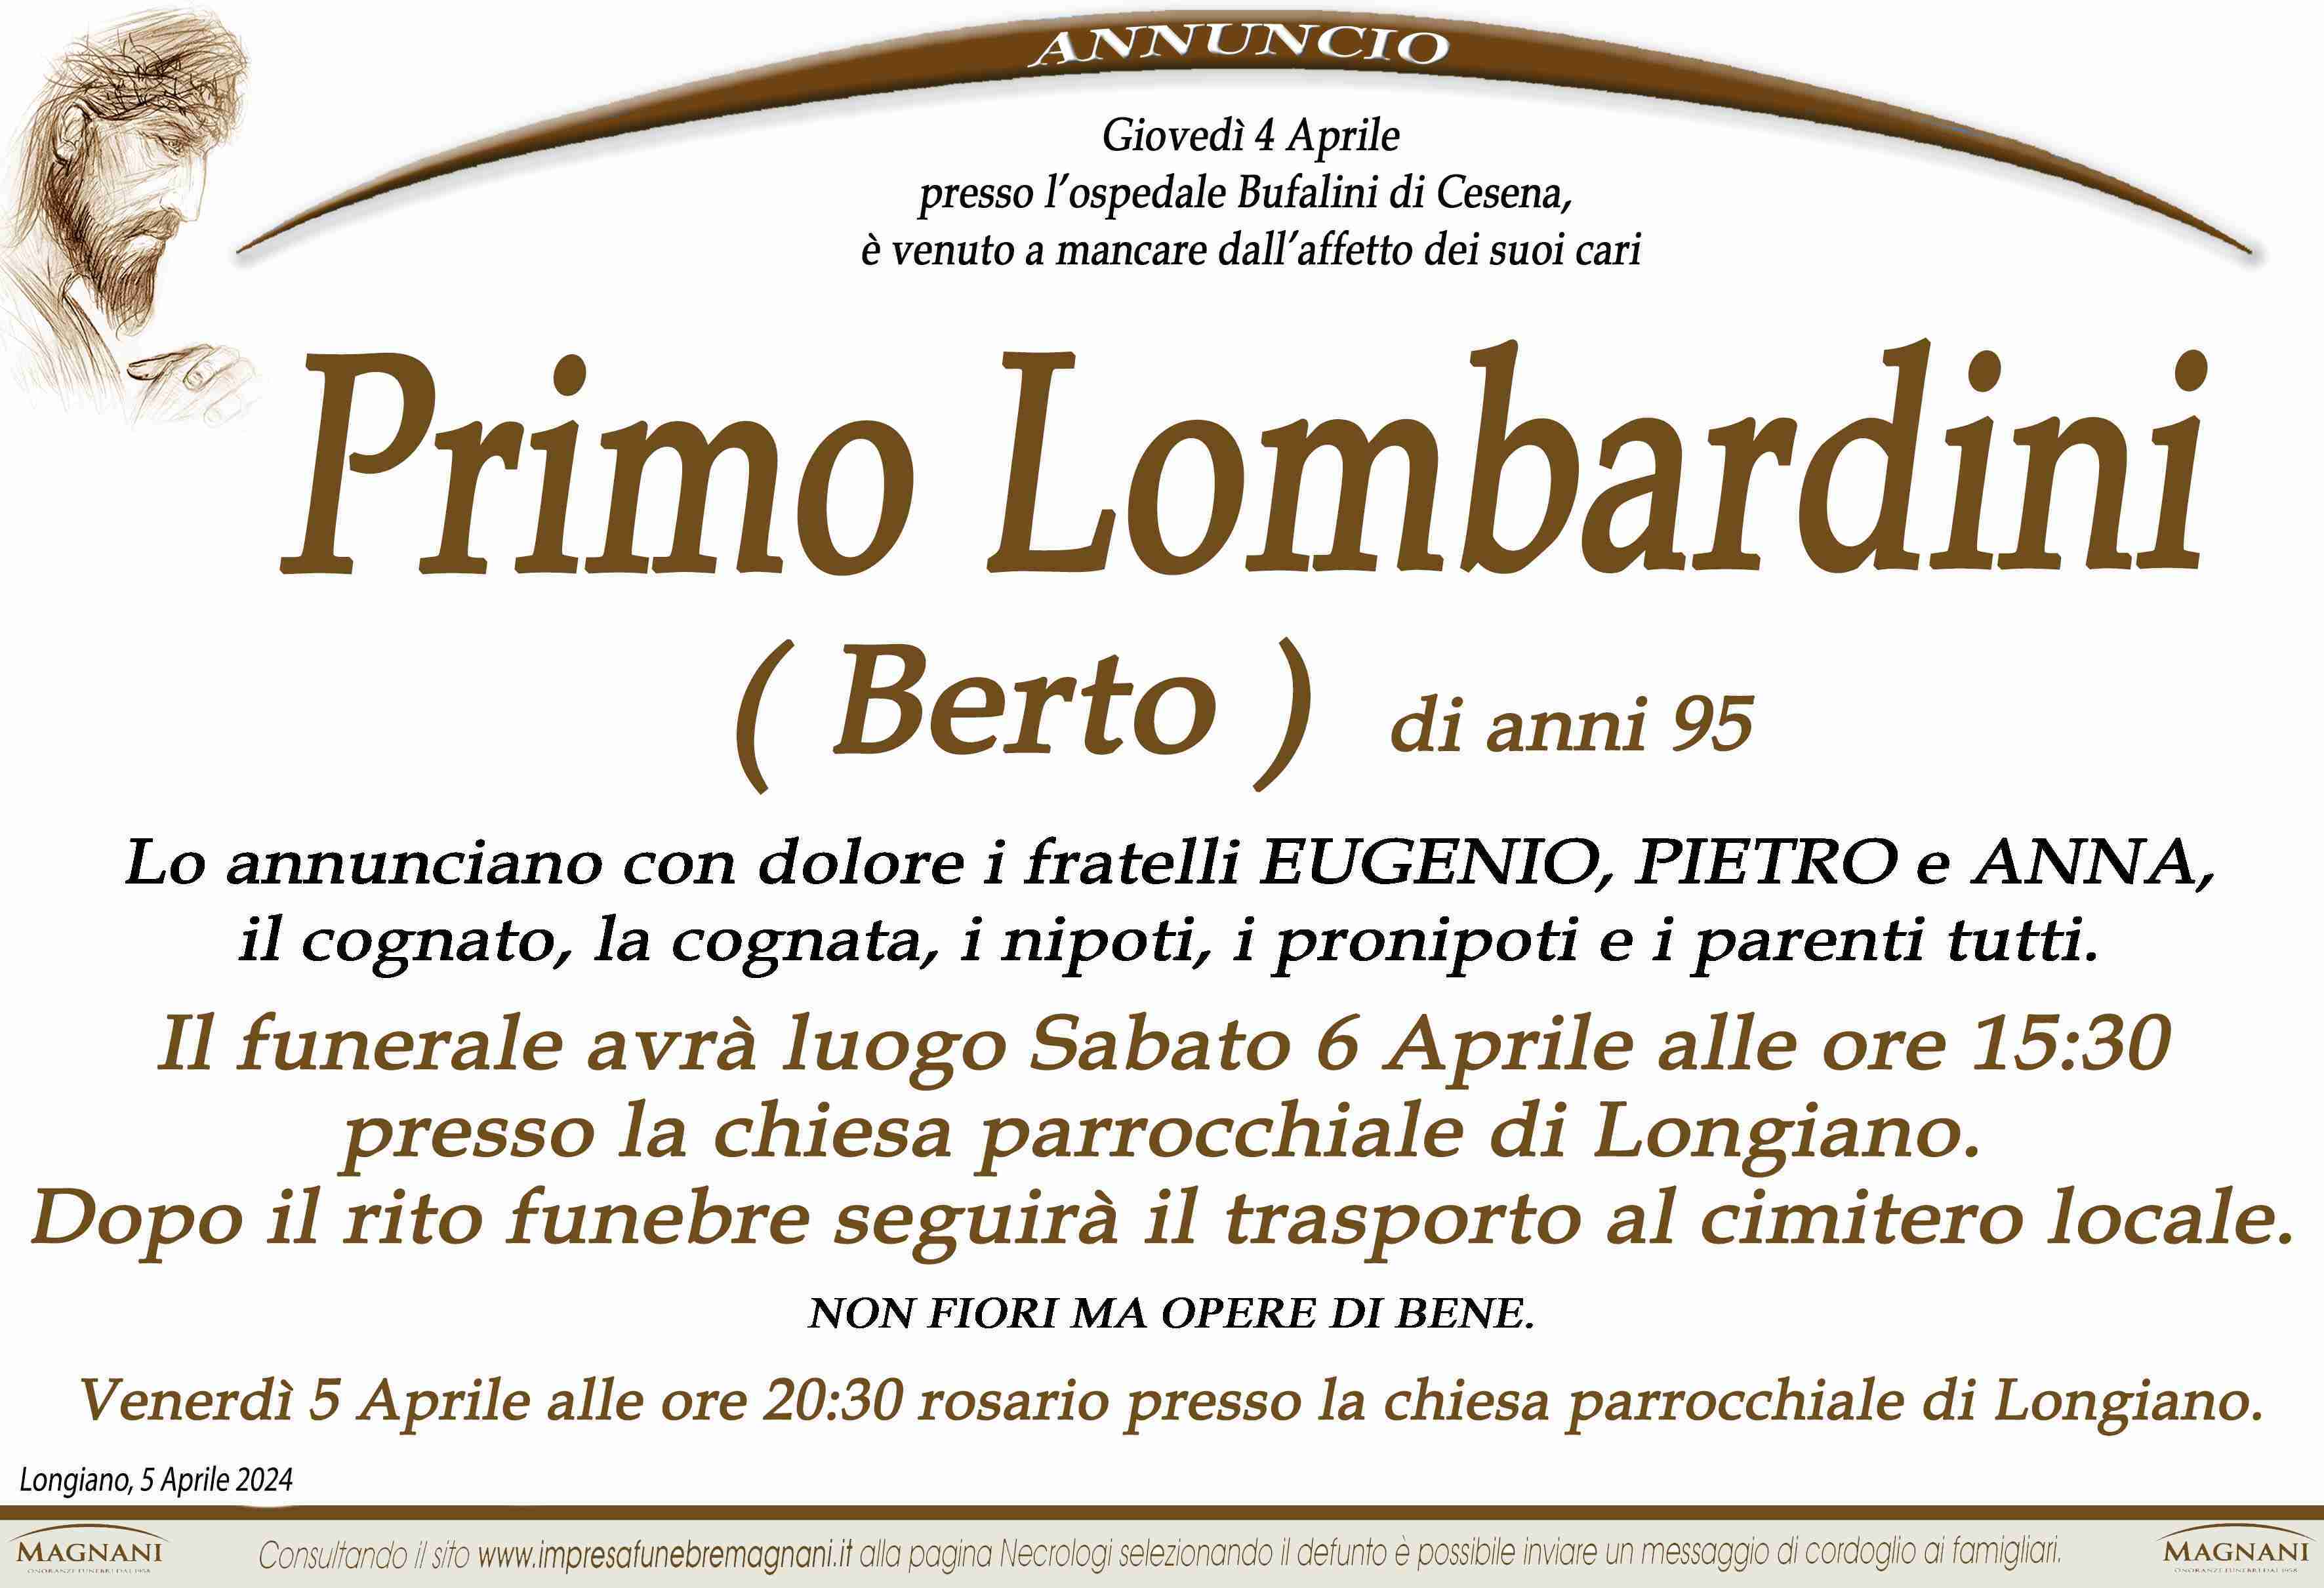 Primo Lombardini